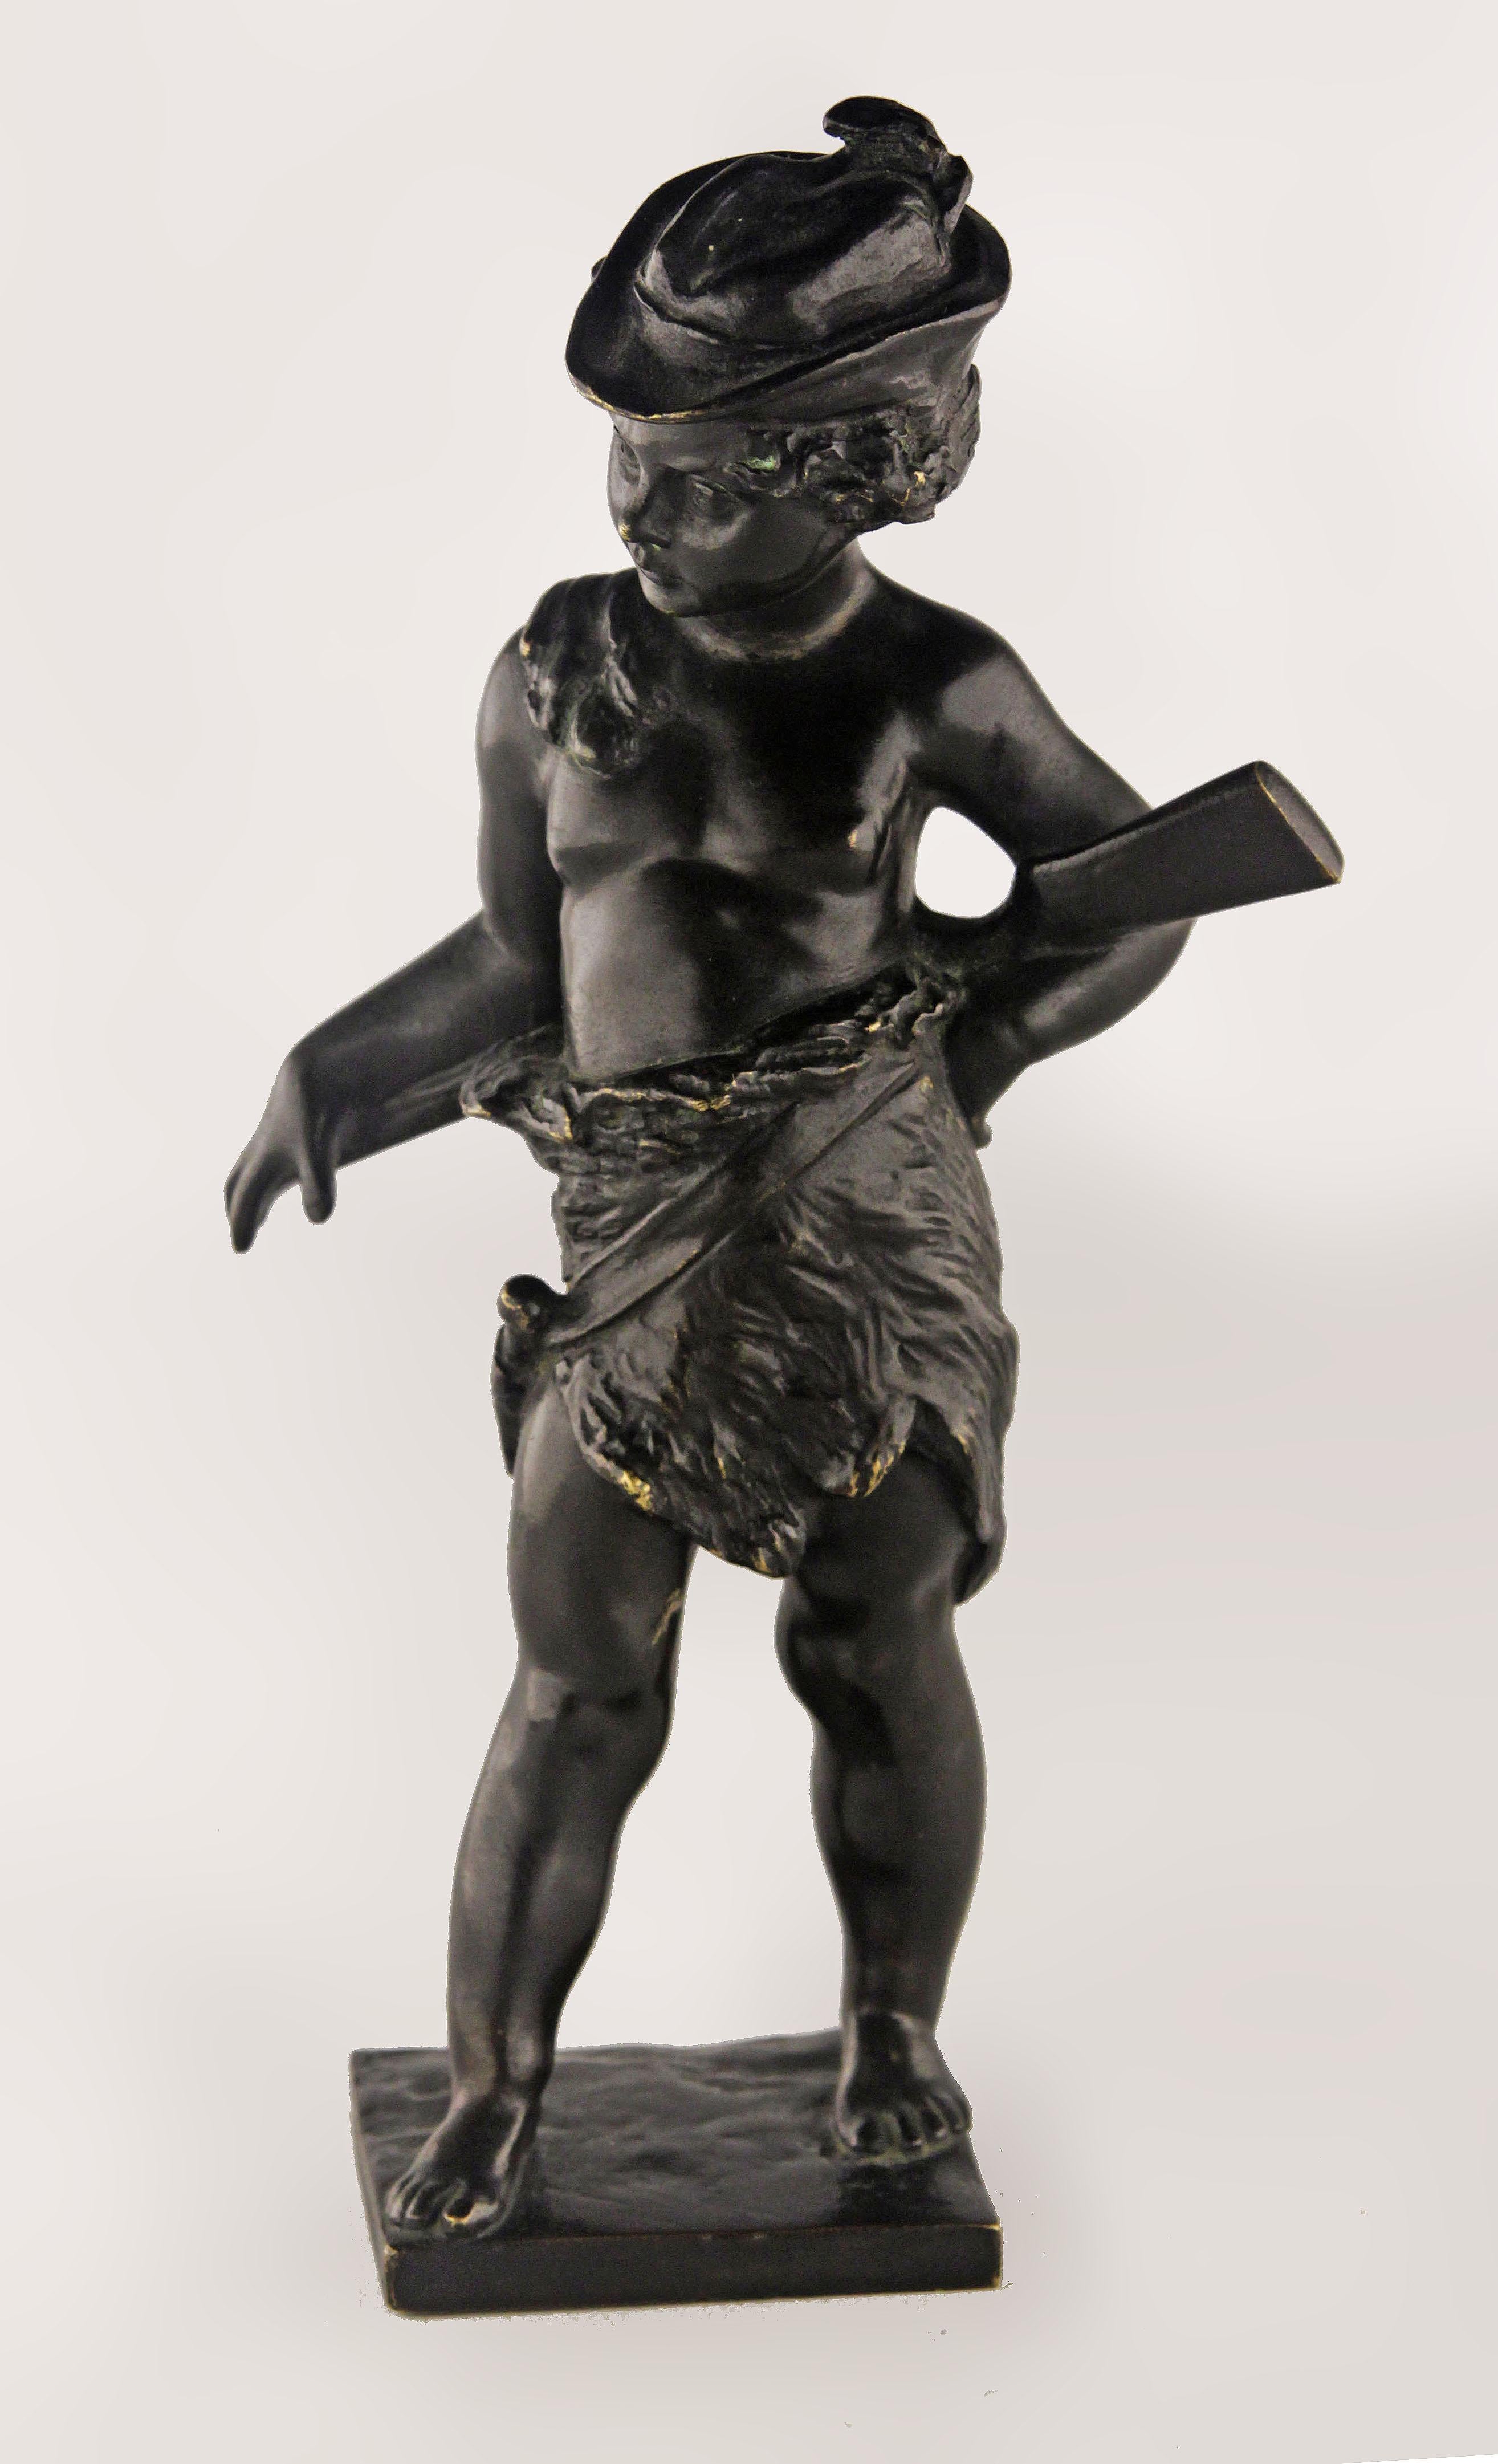 Fin du 19e siècle Sculpture romantique en bronze à patine noire représentant un garçon chasseur avec un fusil

Par : inconnu
MATERIAL : bronze, cuivre, métal
Technique : coulé, moulé, patiné, poli, travail du métal
Dimensions : 2 in x 3 in x 7